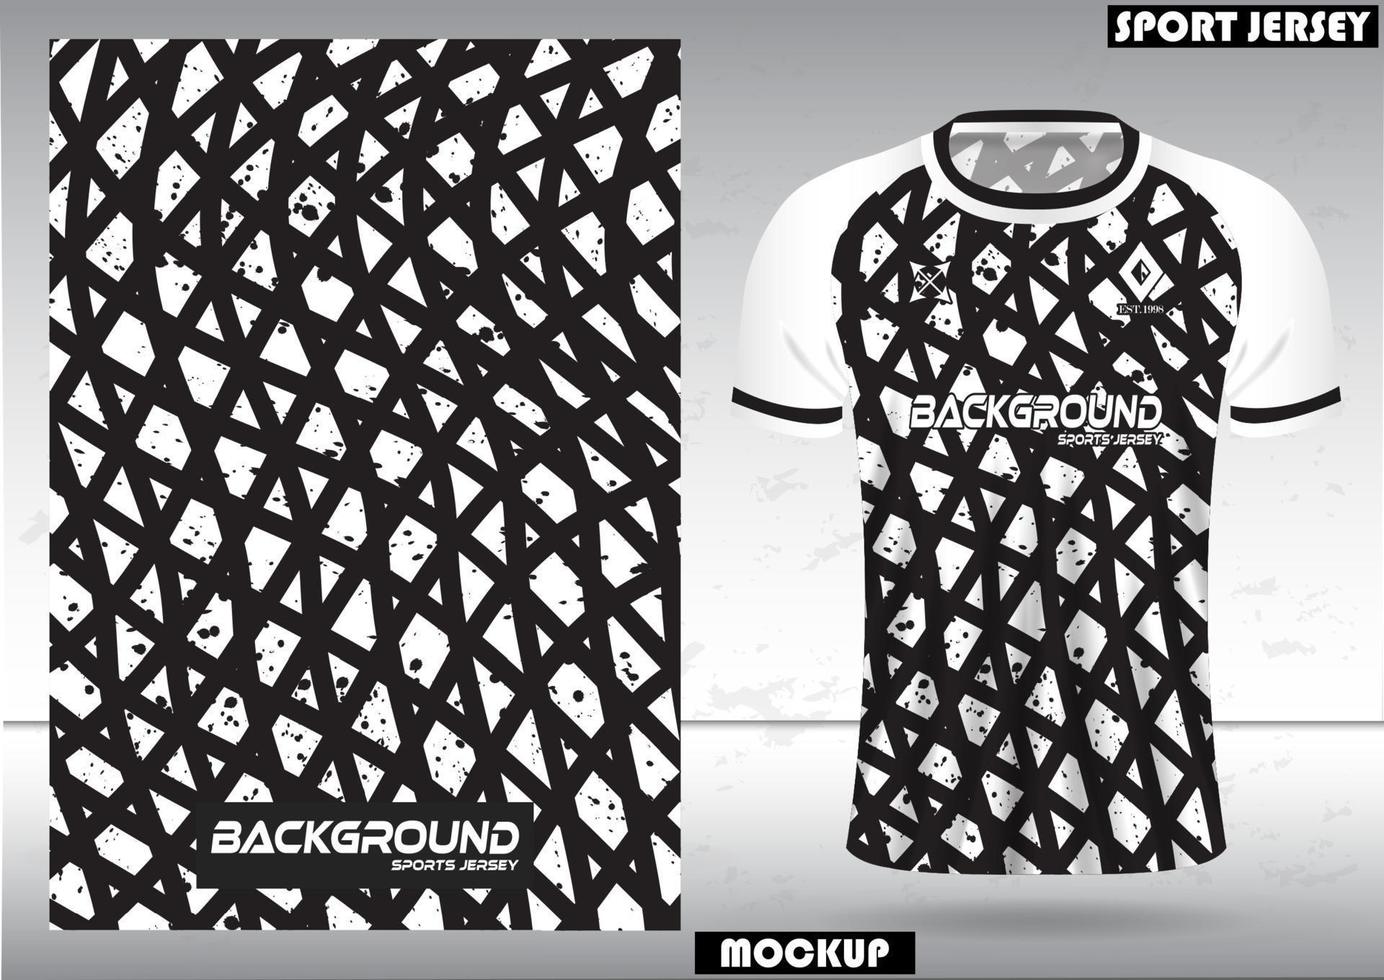 tejido textil para camisetas deportivas, camisetas de fútbol y maquetas para el club de fútbol. vista frontal uniforme. vector